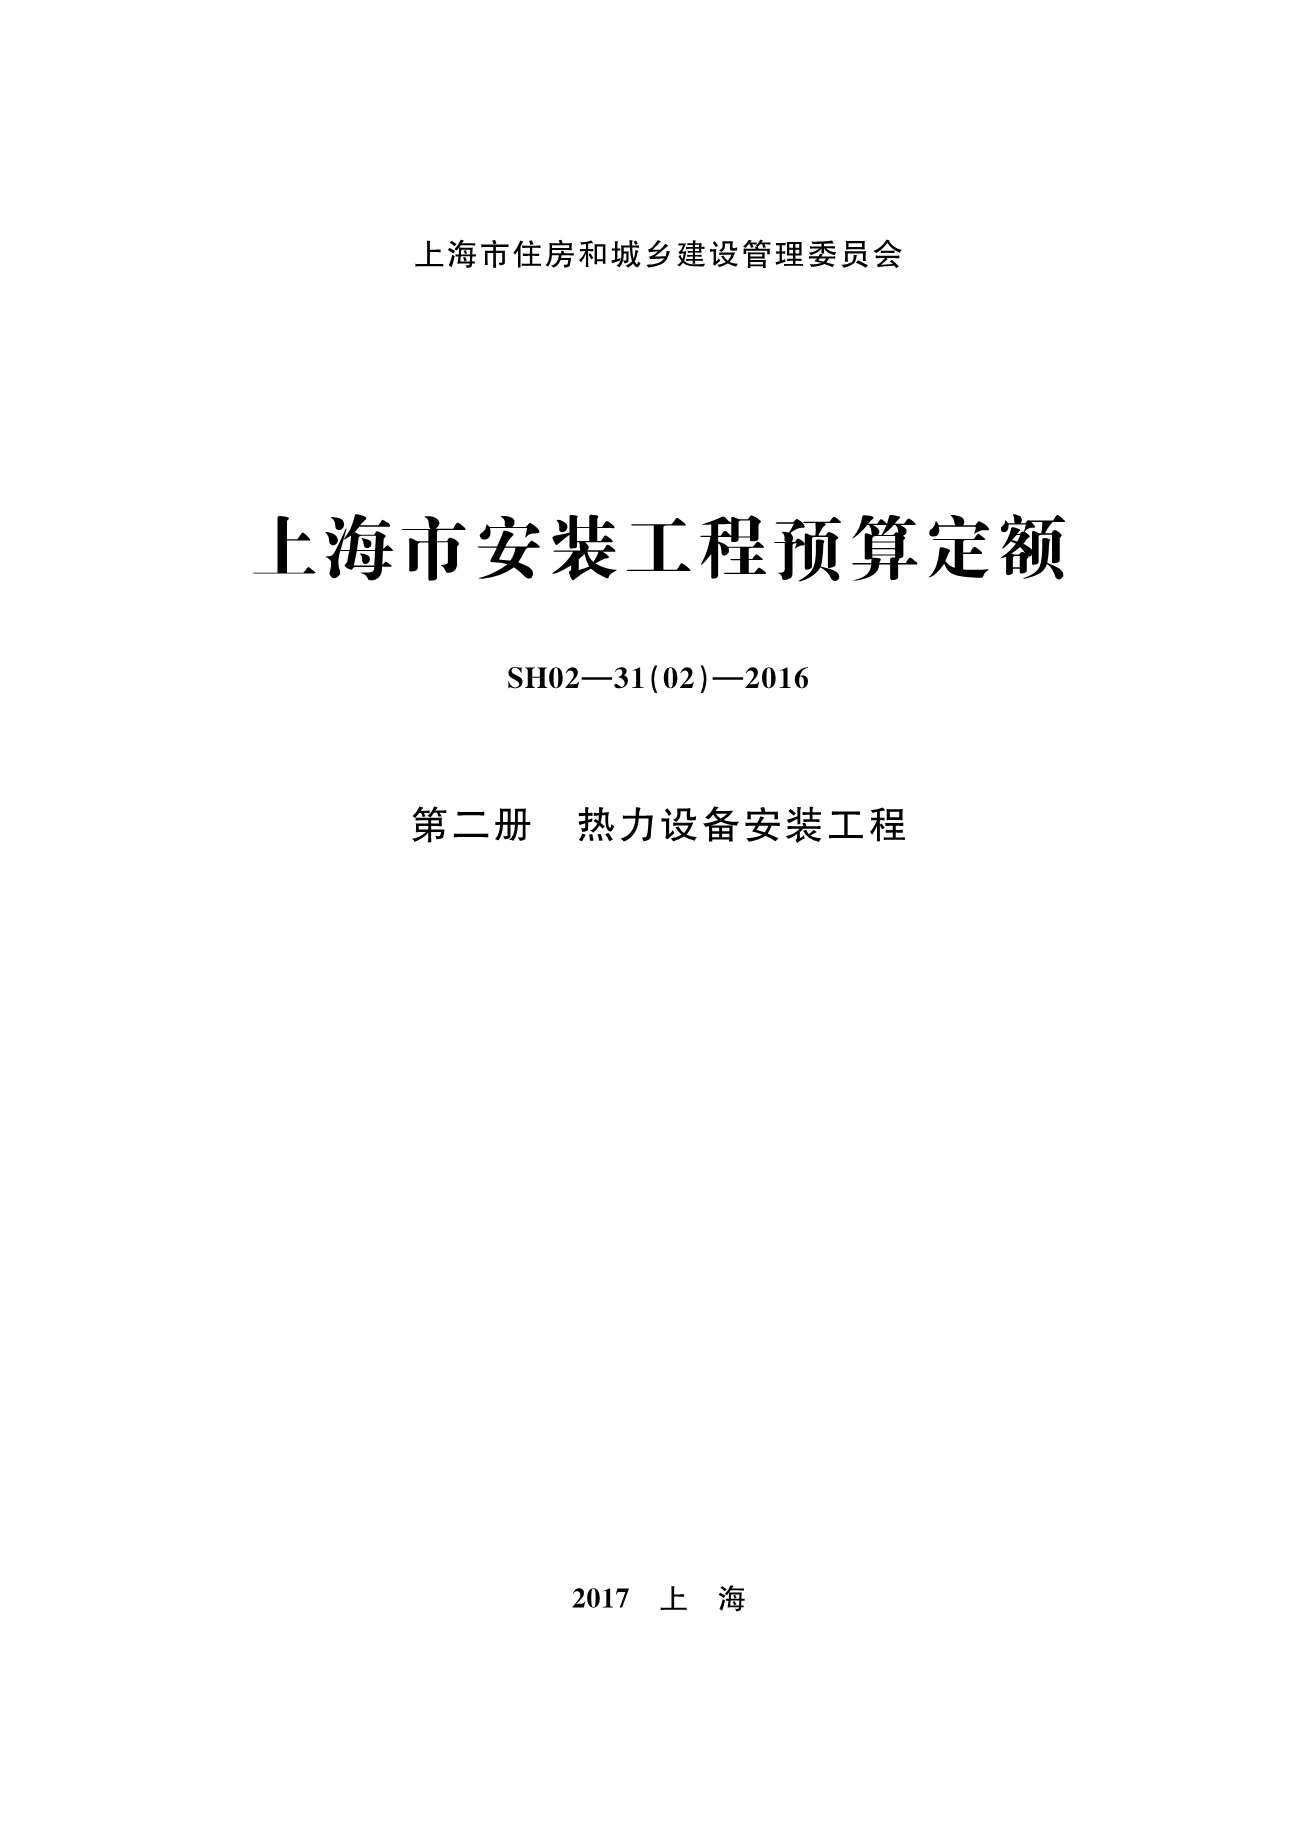 2016上海安装定额_第二册_热力设备安装工程